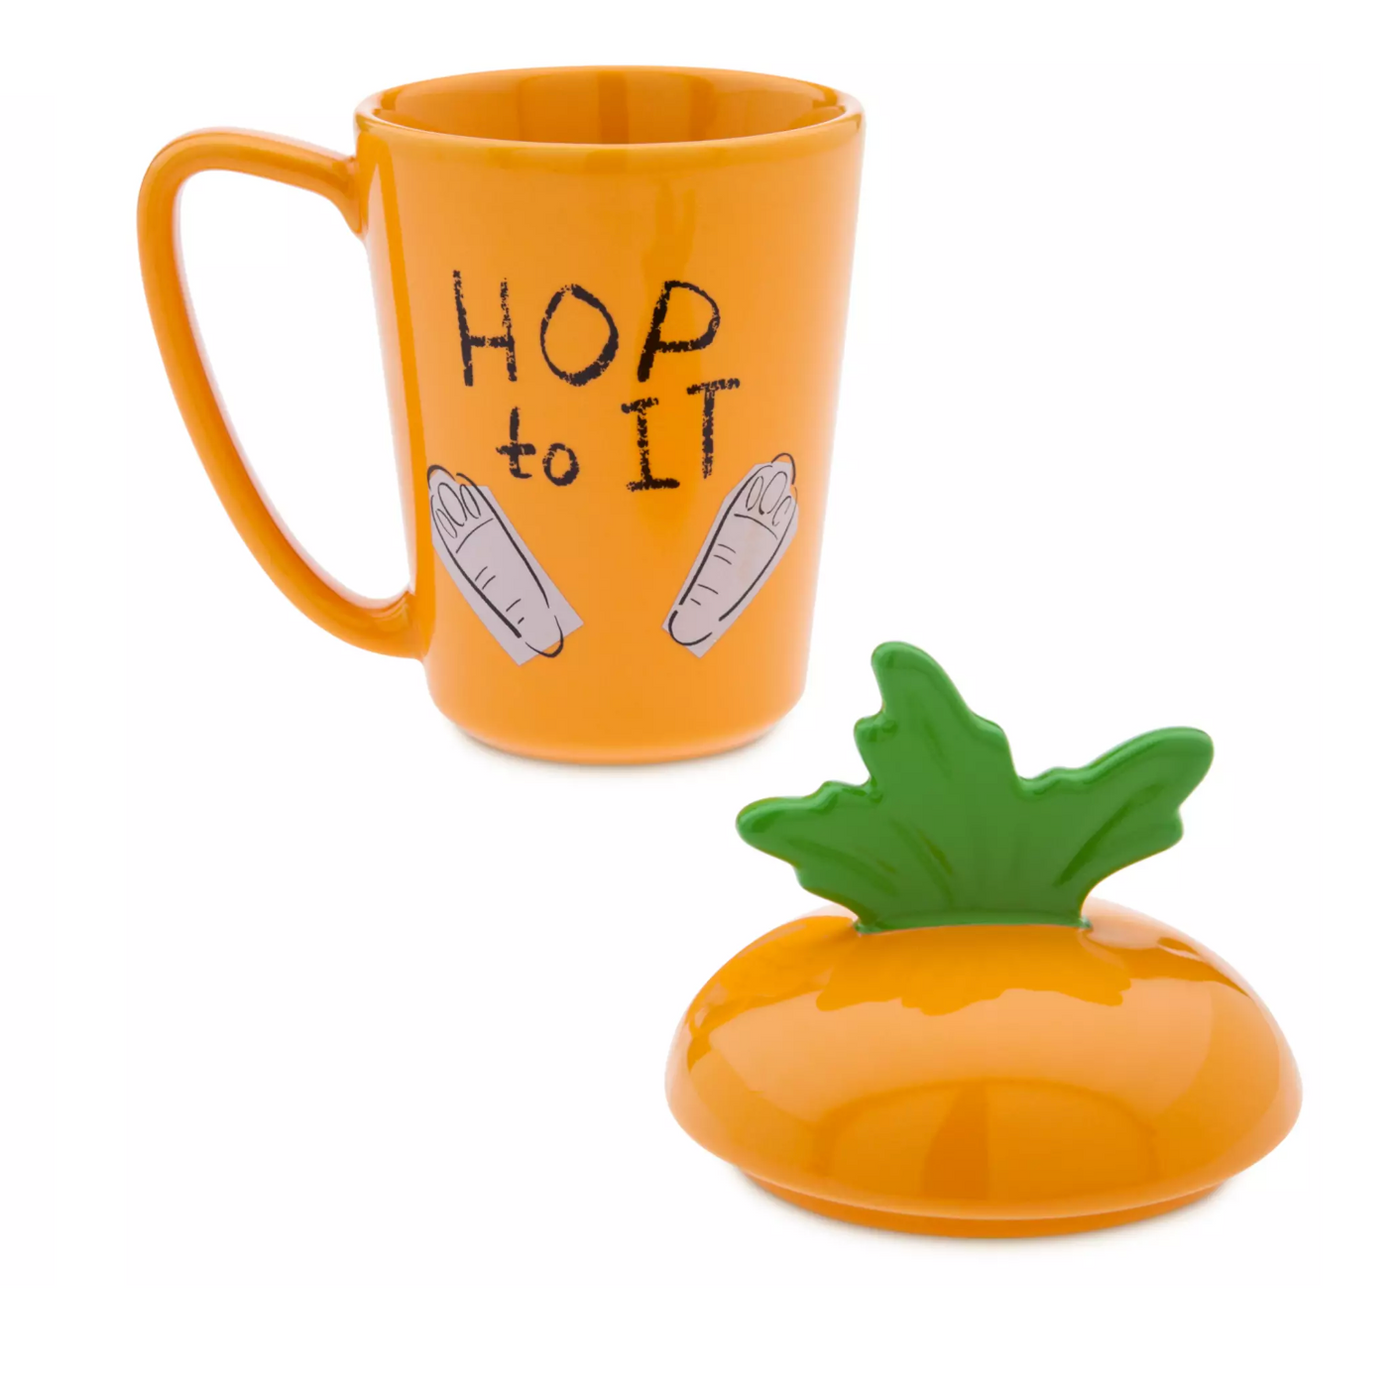 Disney Zootopia Judy Hopps Ceramic Mug with Lid New